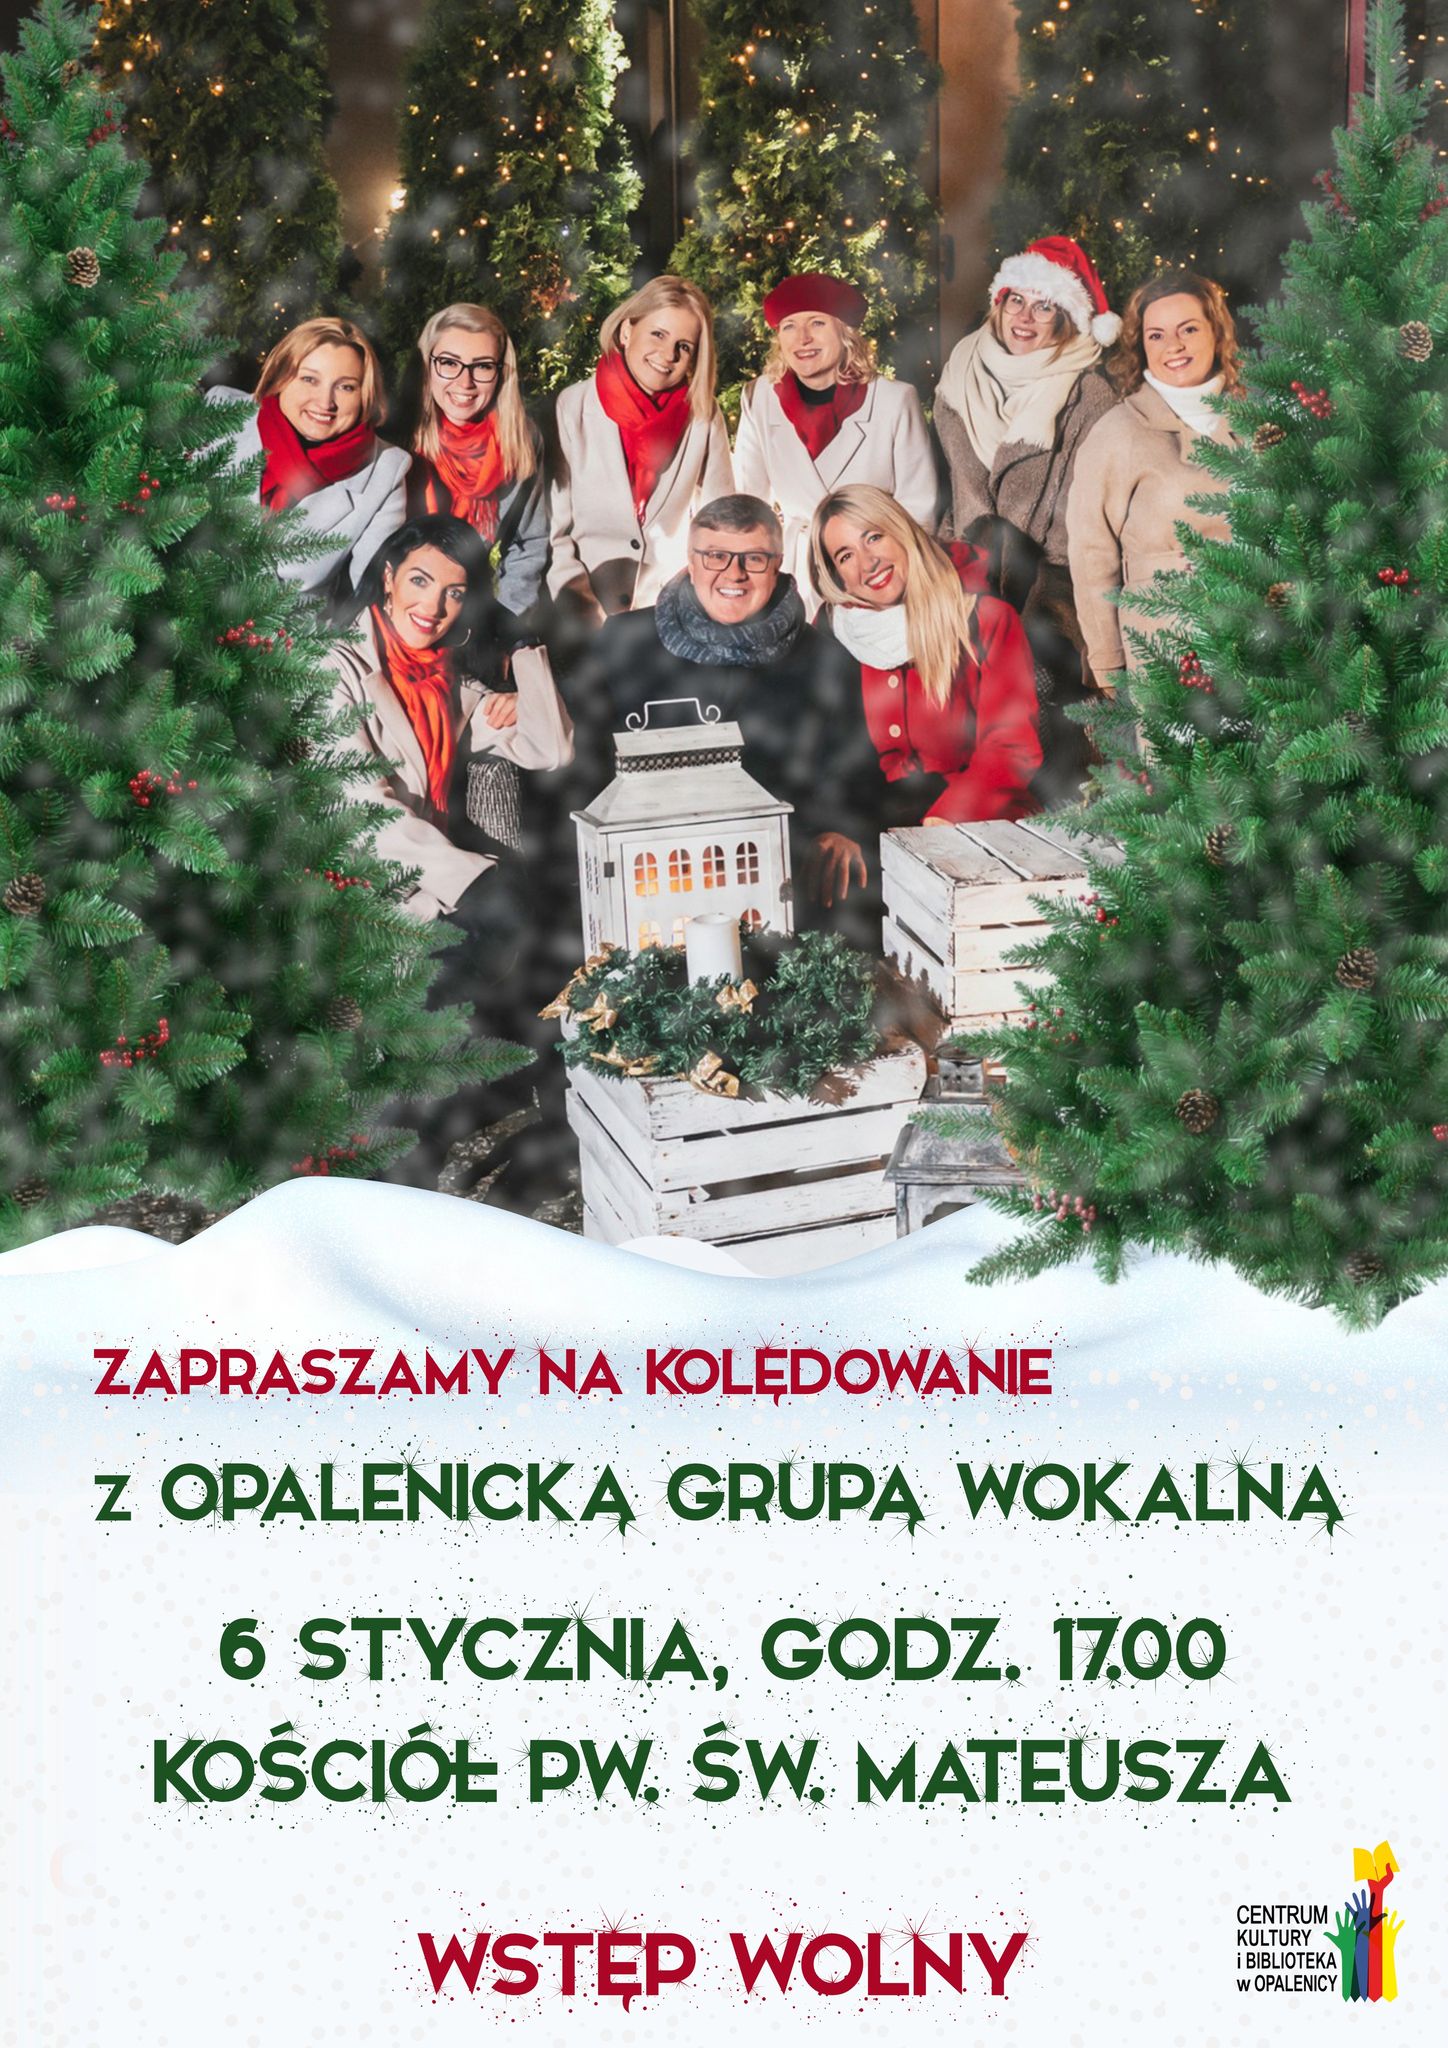 plakat informacyjny dotyczący koncertu opalenickiej grupy wokalnej